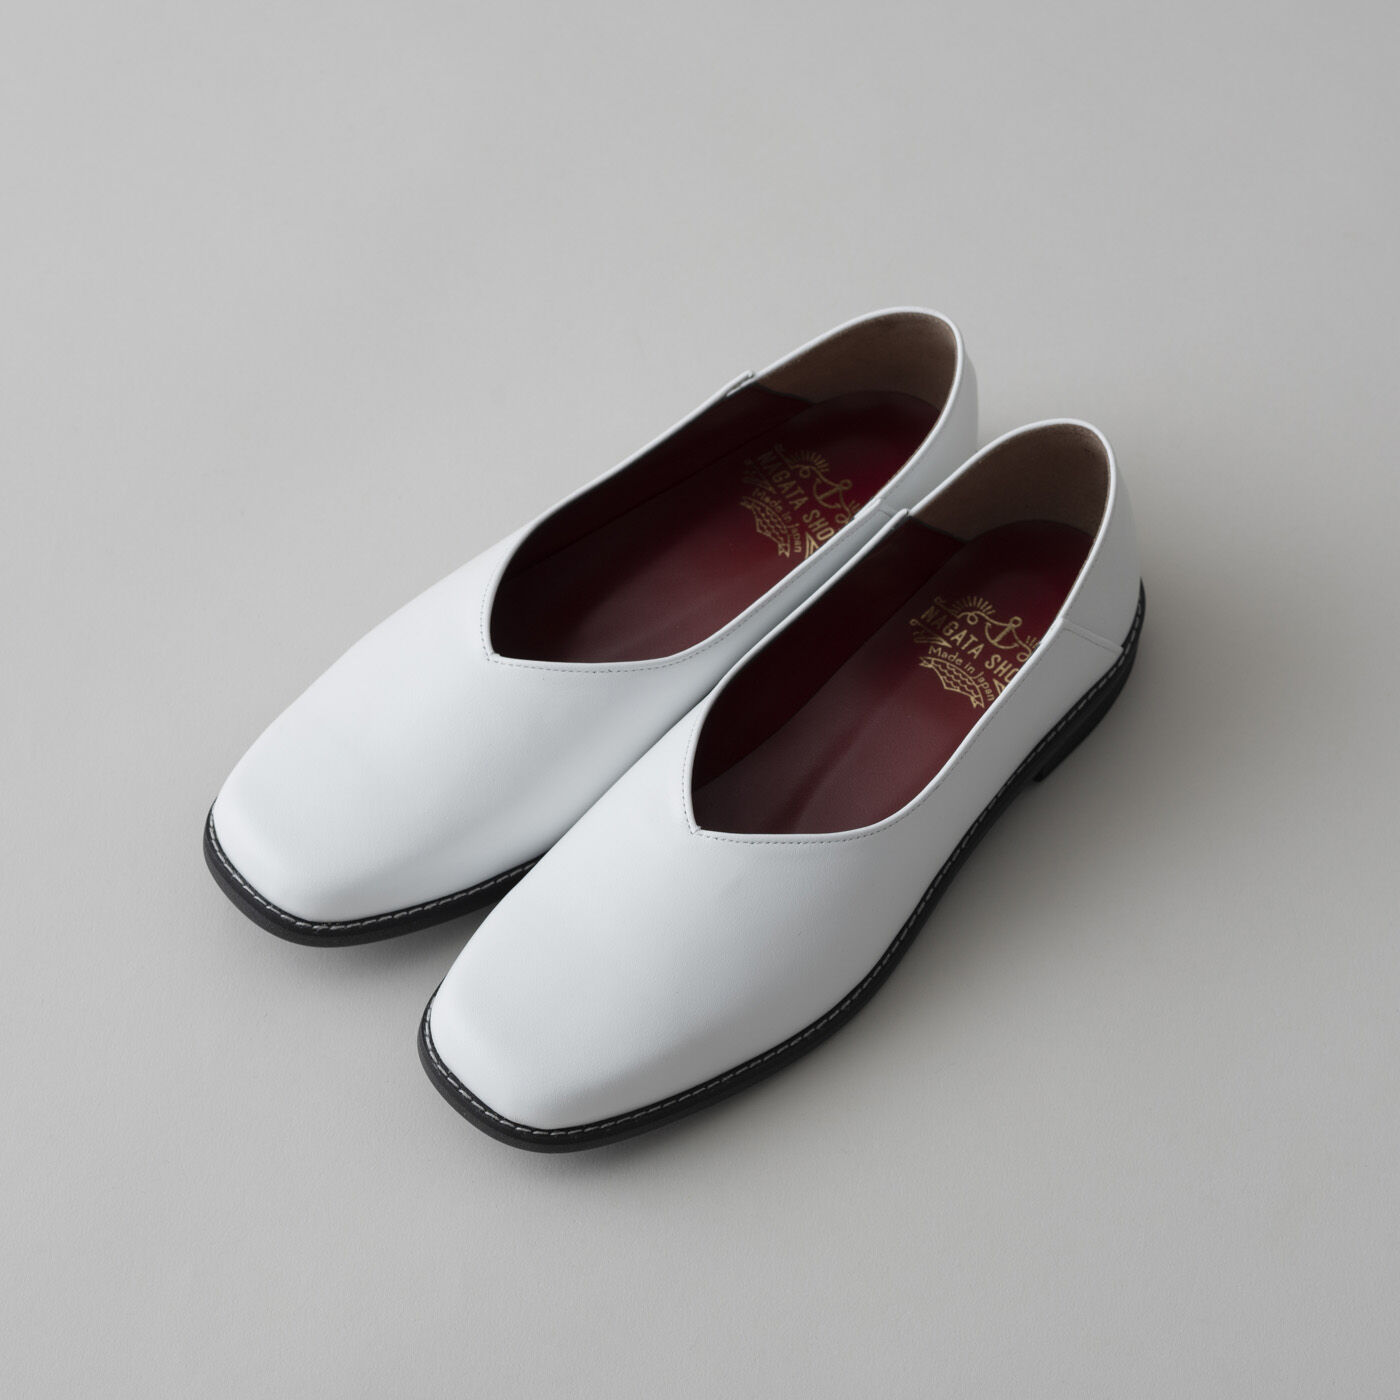 ＆Stories|長田の靴メーカーと作った　職人本革のスクエアノーズシューズ〈ホワイト〉|甲高幅広の足もすっぽり包み込みながらスクエアトウで指の当たりを軽減し、中敷きには足裏に心地いいクッションを入れました。